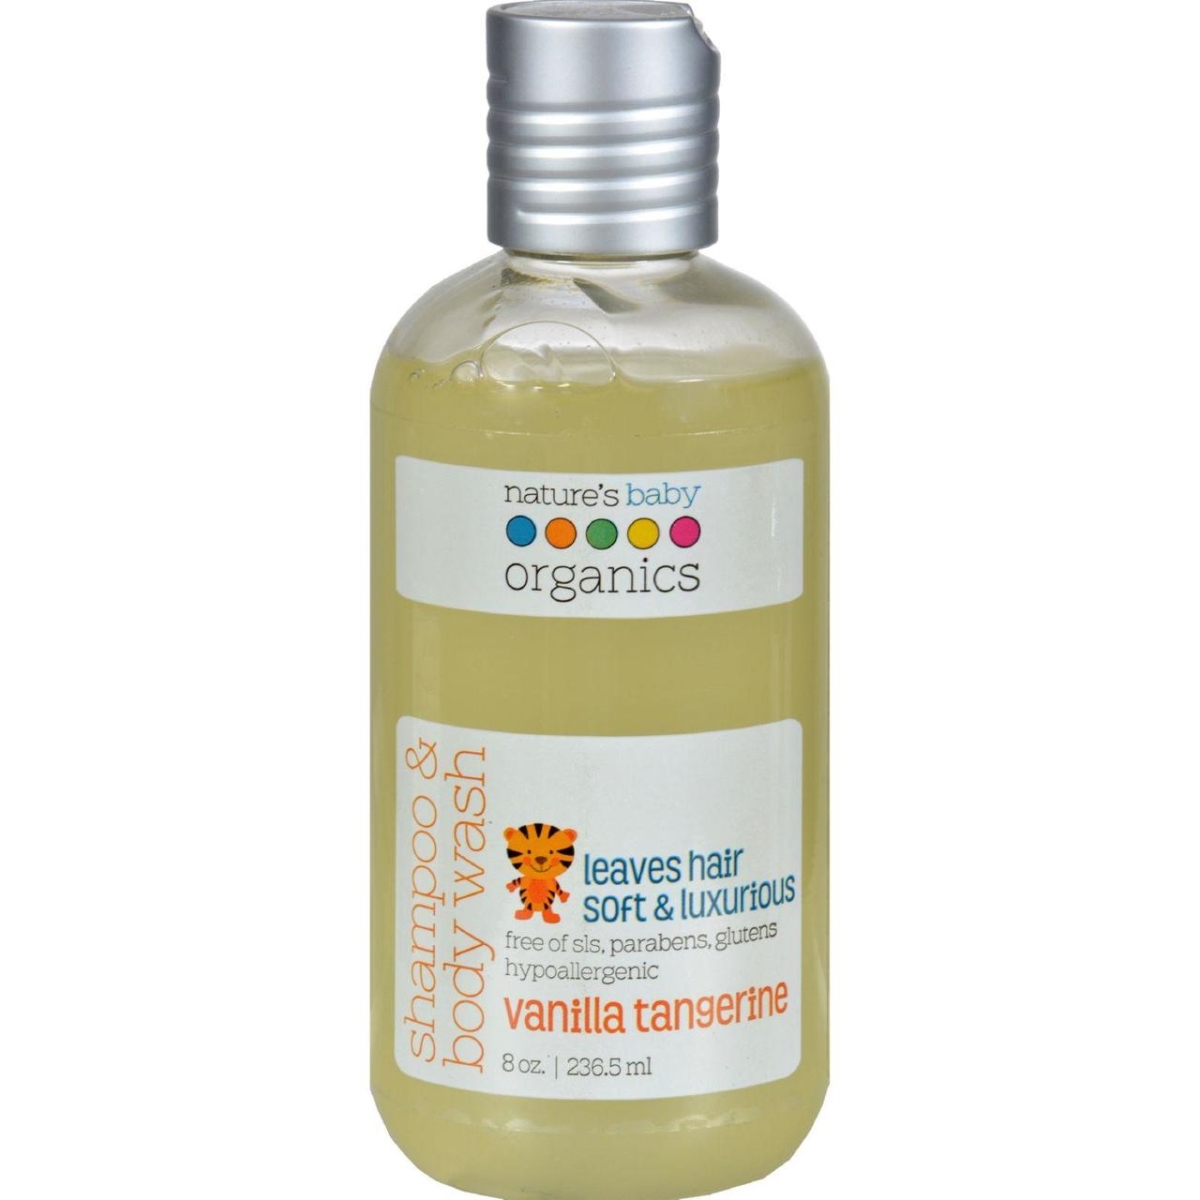 Hg0196485 8 Fl Oz Shampoo & Body Wash Vanilla Tangerine